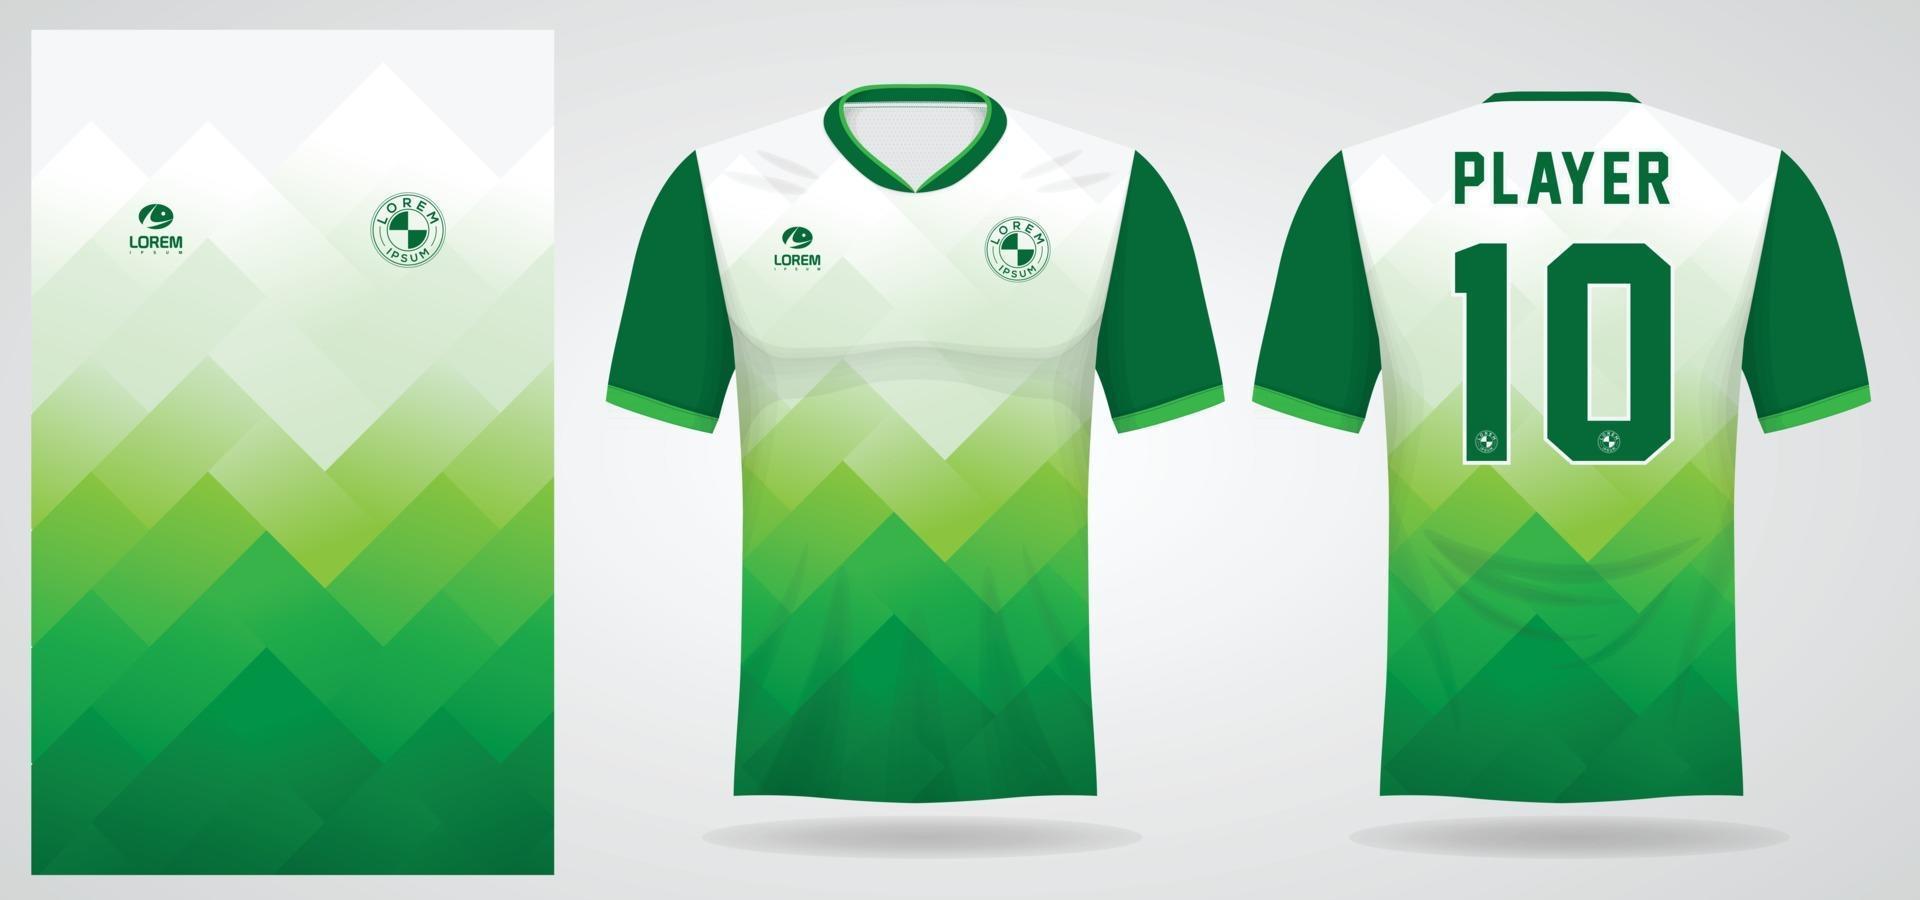 Plantilla de camiseta deportiva para uniformes de equipos y diseño de camisetas de fútbol. vector